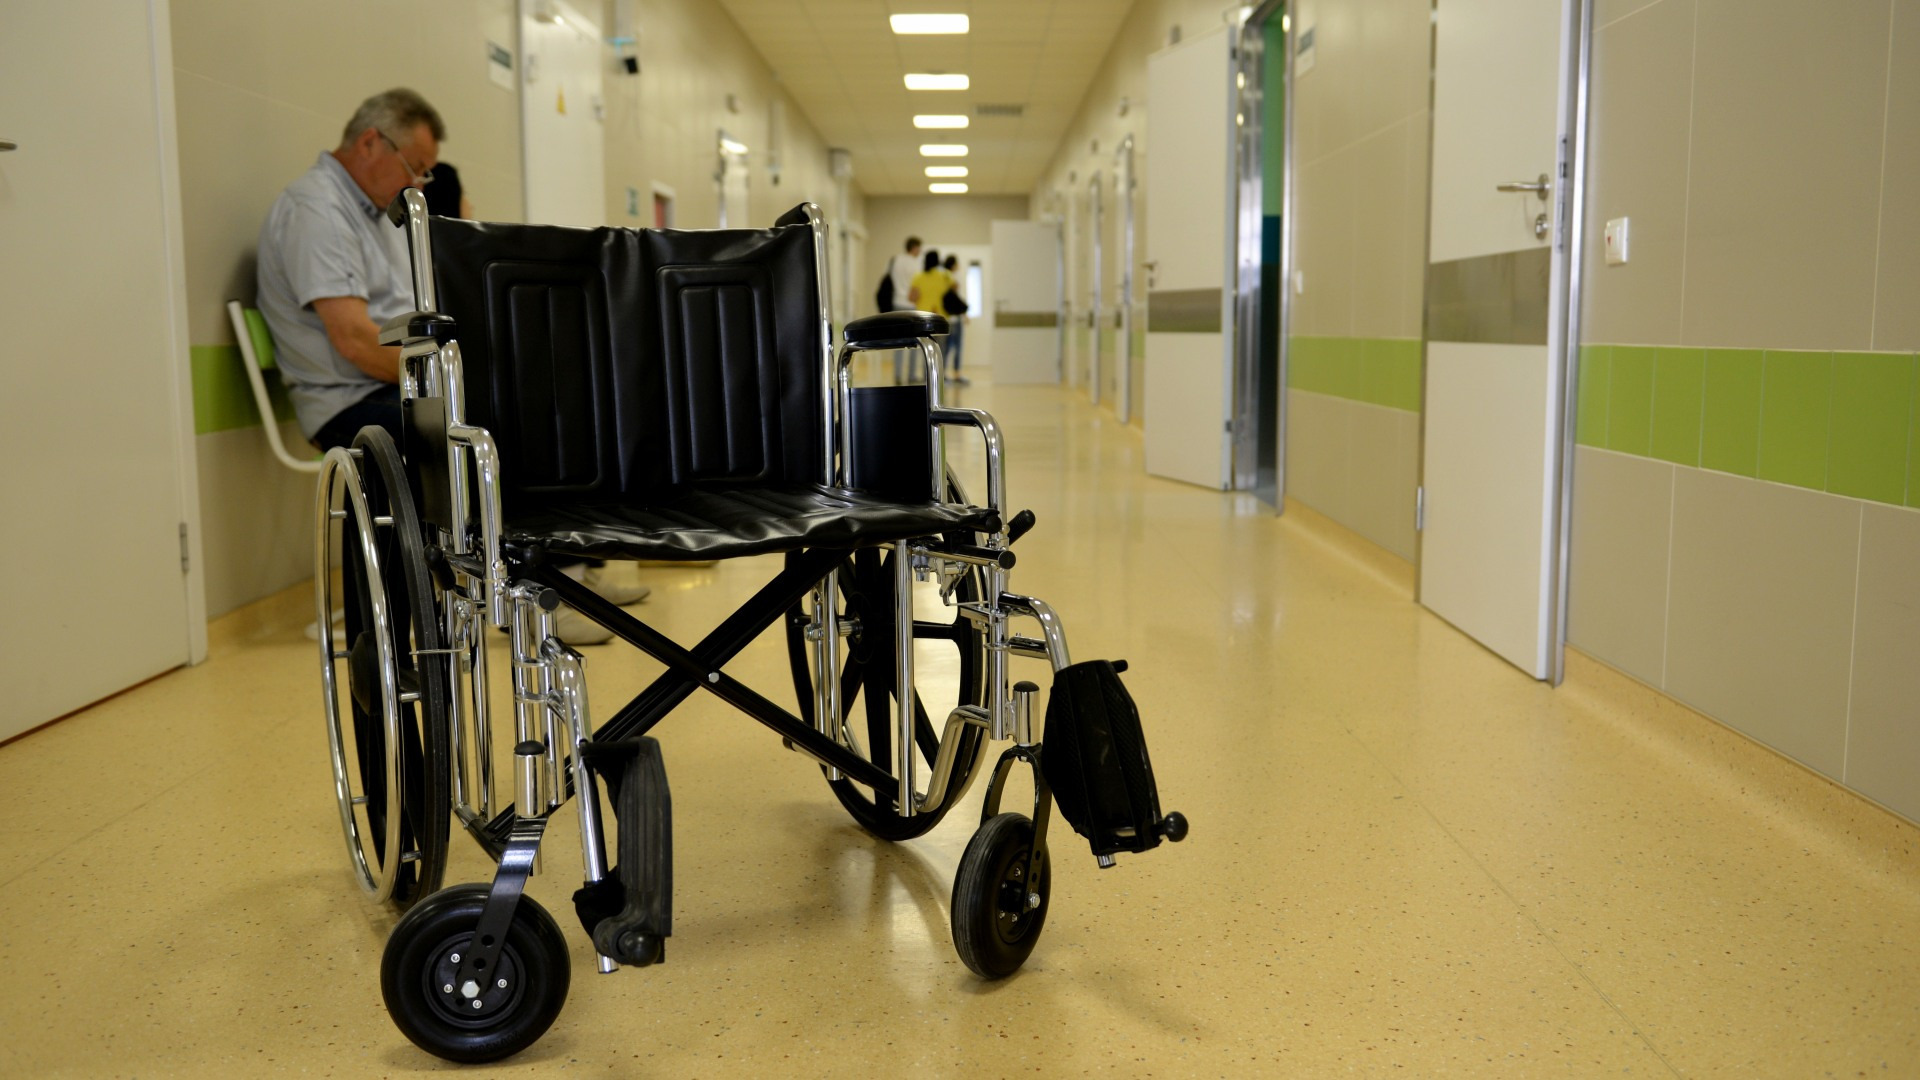 Волгоградцы при необходиомсти могут получить инвалидные коляски в прокат